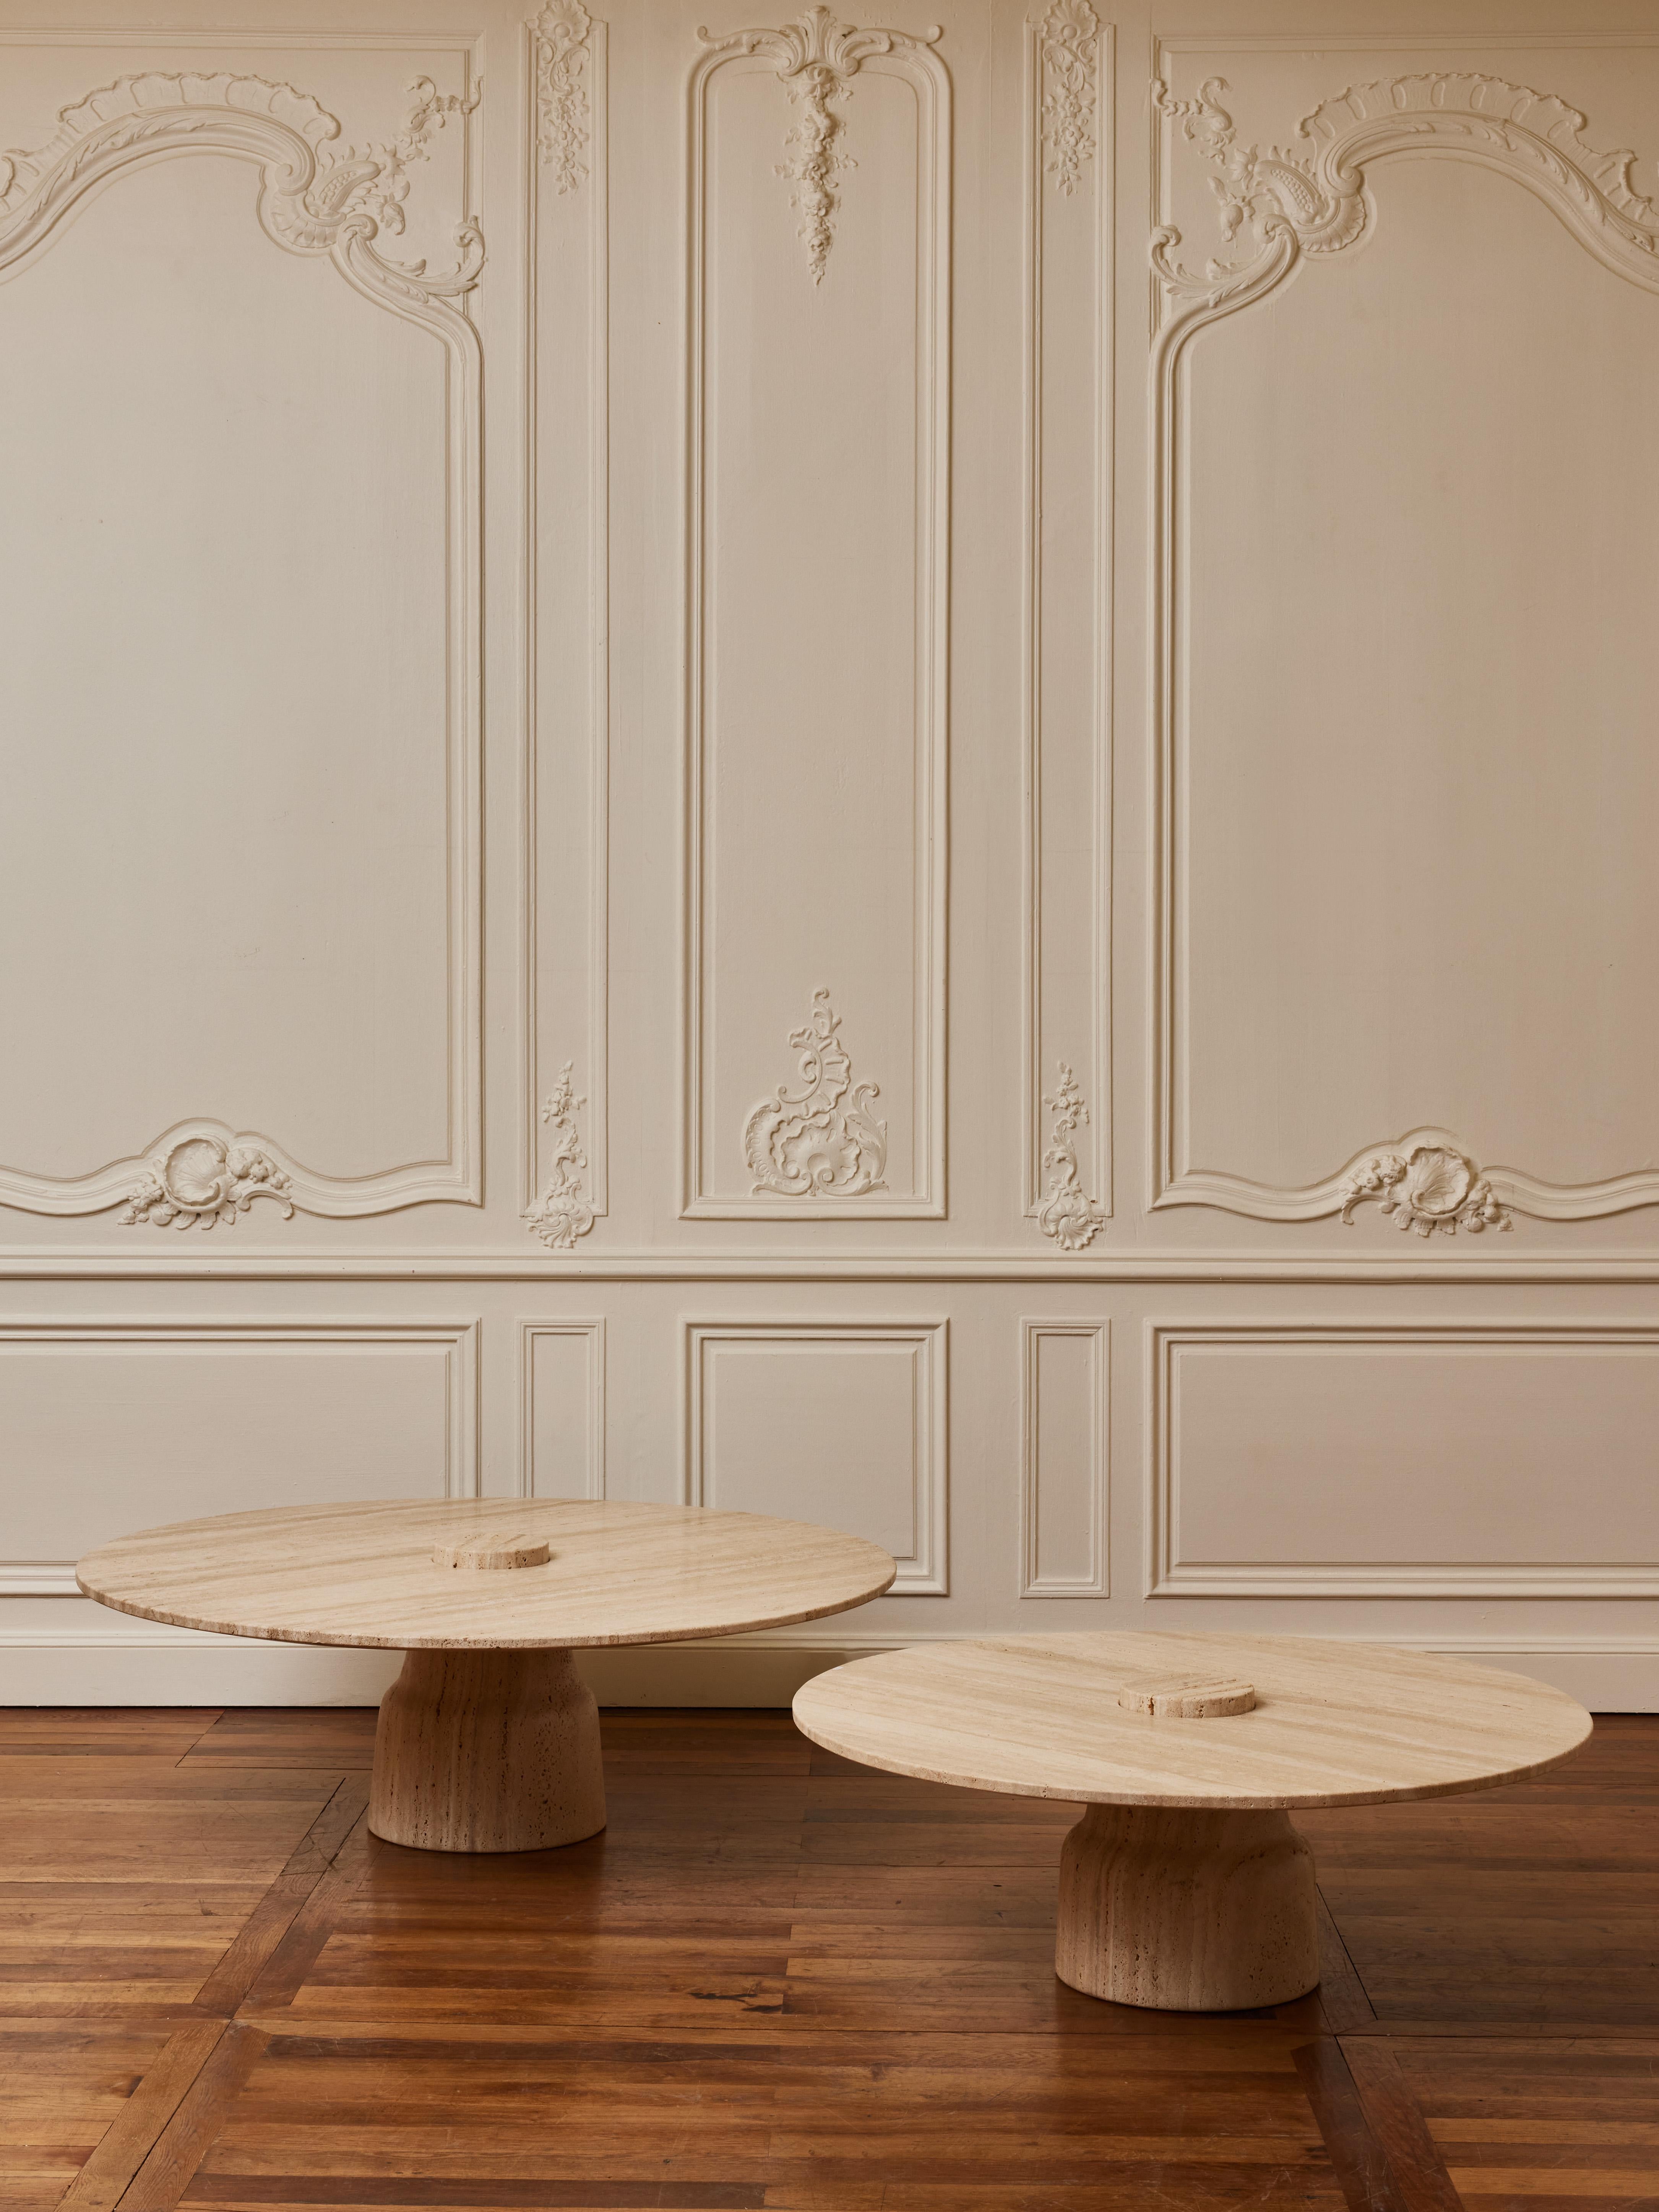 Ein Paar Couchtische aus massivem Travertinstein.
Gestaltung durch das Studio Glustin.
Italien, 2023.

Abmessungen:
Durchm. 100 x H 34 cm
Durchm. 120 x H 39 cm